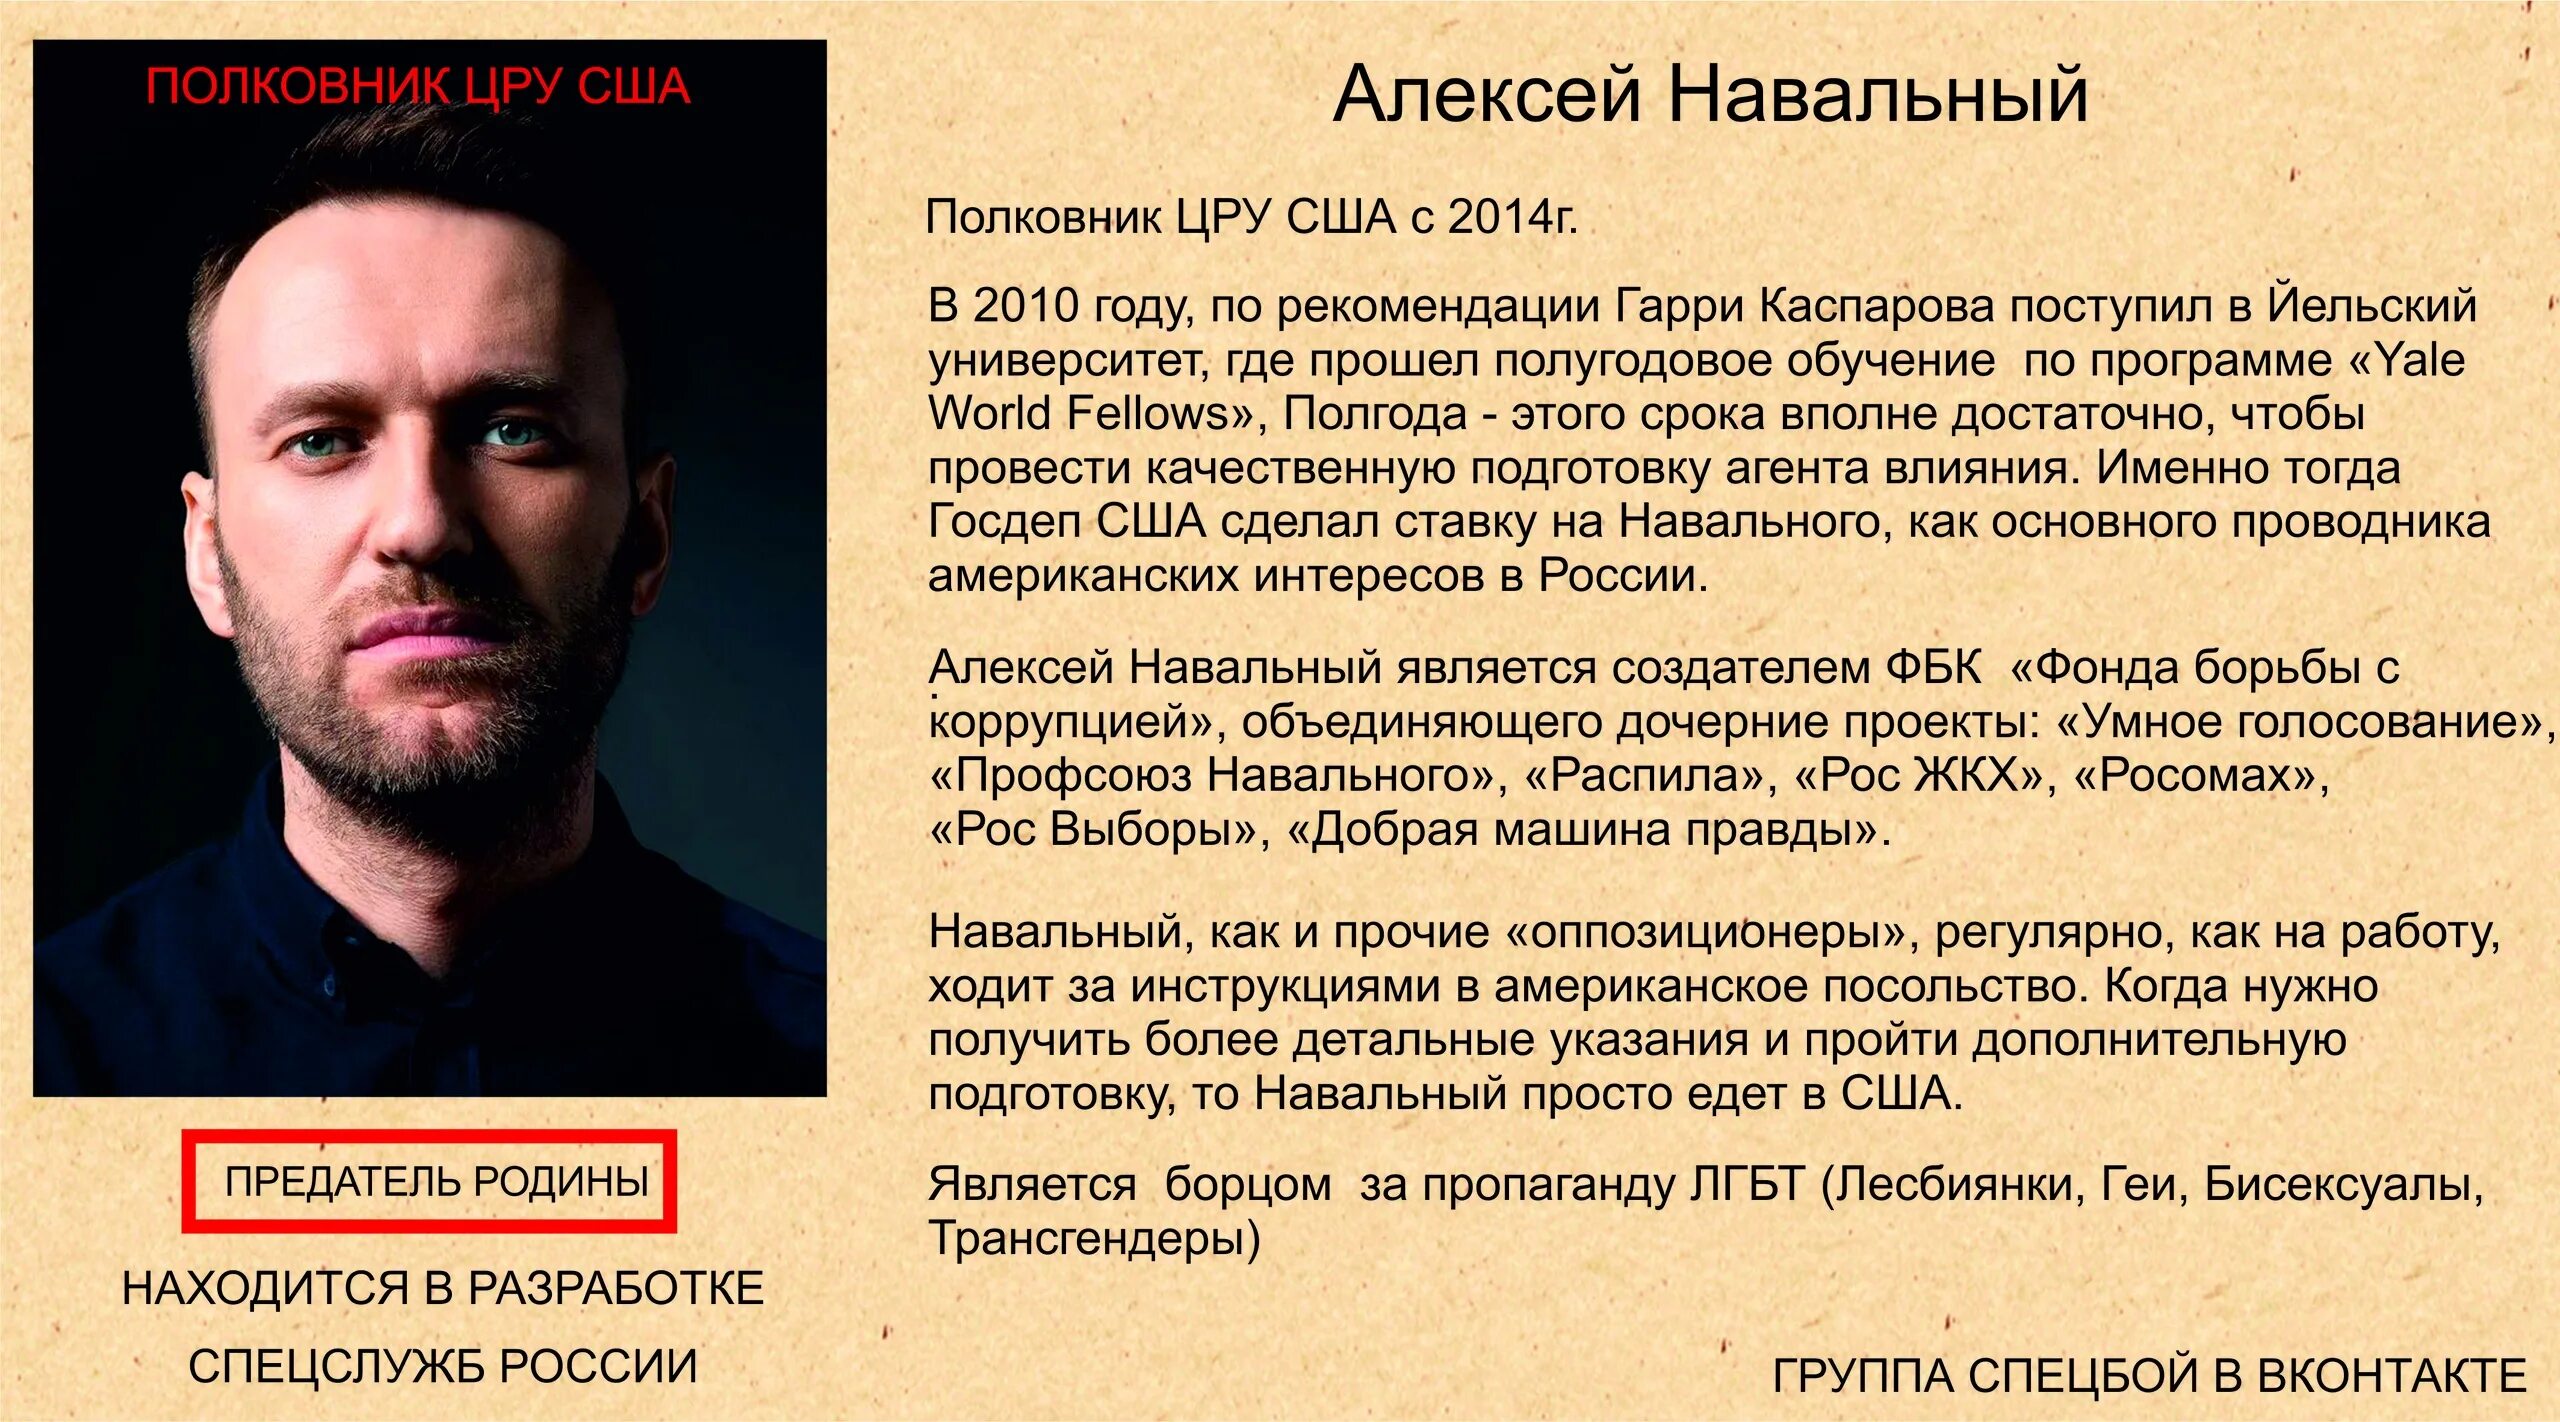 Откуда появился навальный. Навальный агент. Навальный агент Госдепа. Навальный ЦРУ.